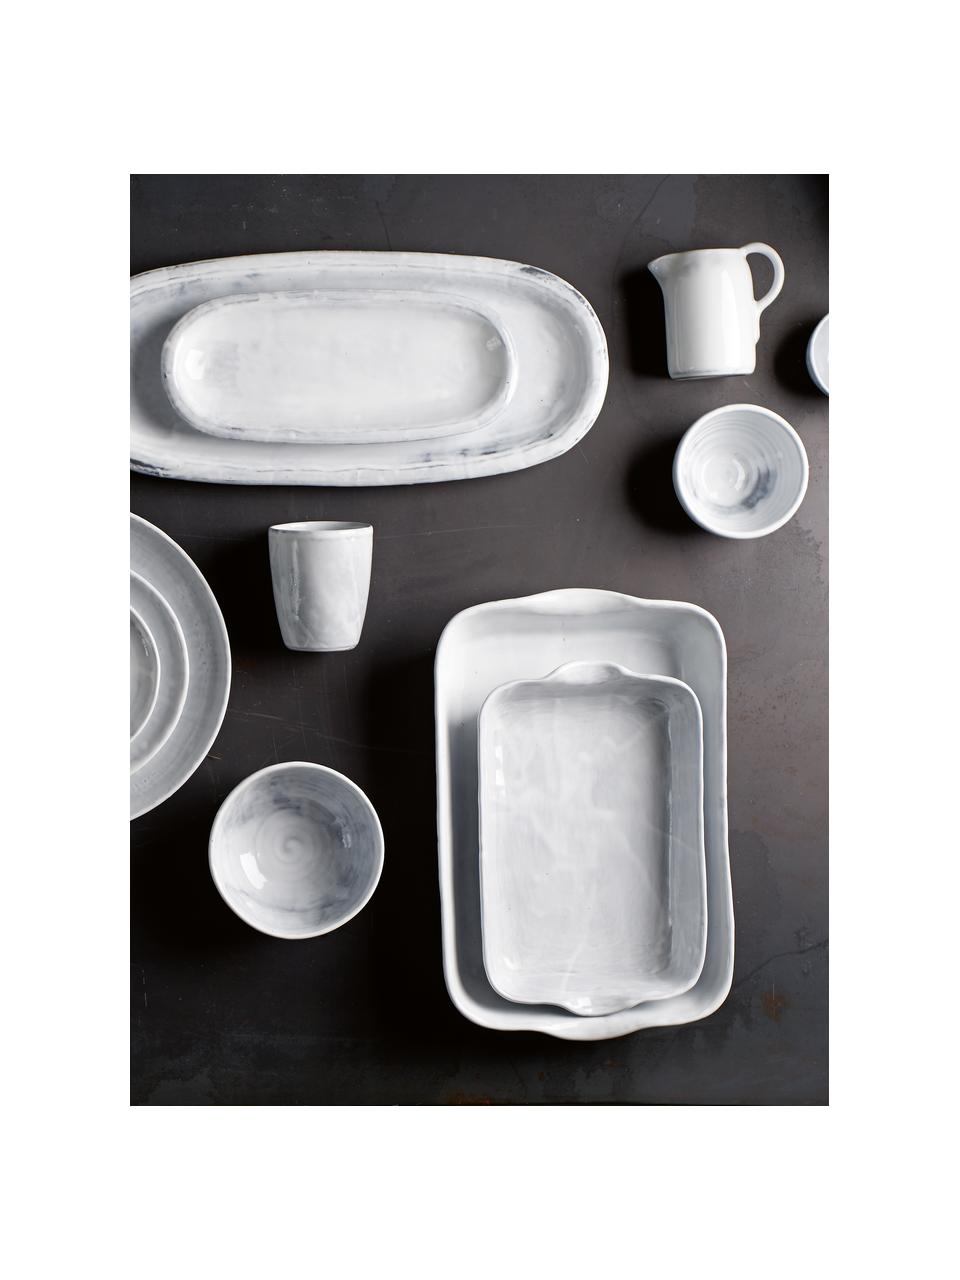 Keramik-Becher Haze in Weiss, 2 Stück, Keramik, glasiert, Weiss, Grau, Ø 10 x H 11 cm